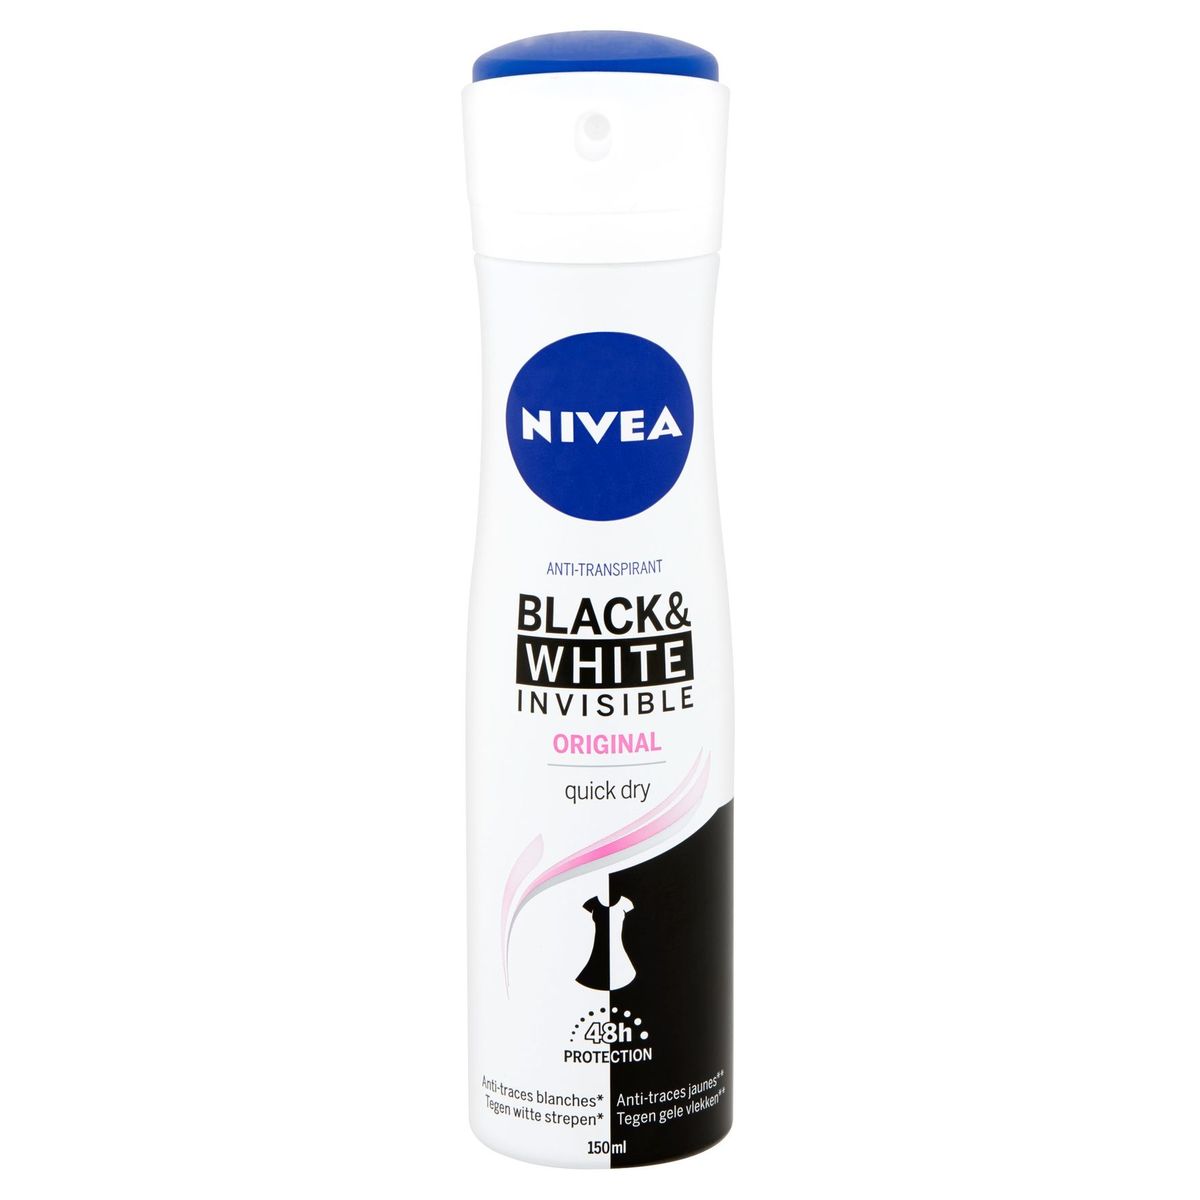 Nivea Anti-Transpirant Black & White Invisible Original 48h Protection 150 ml